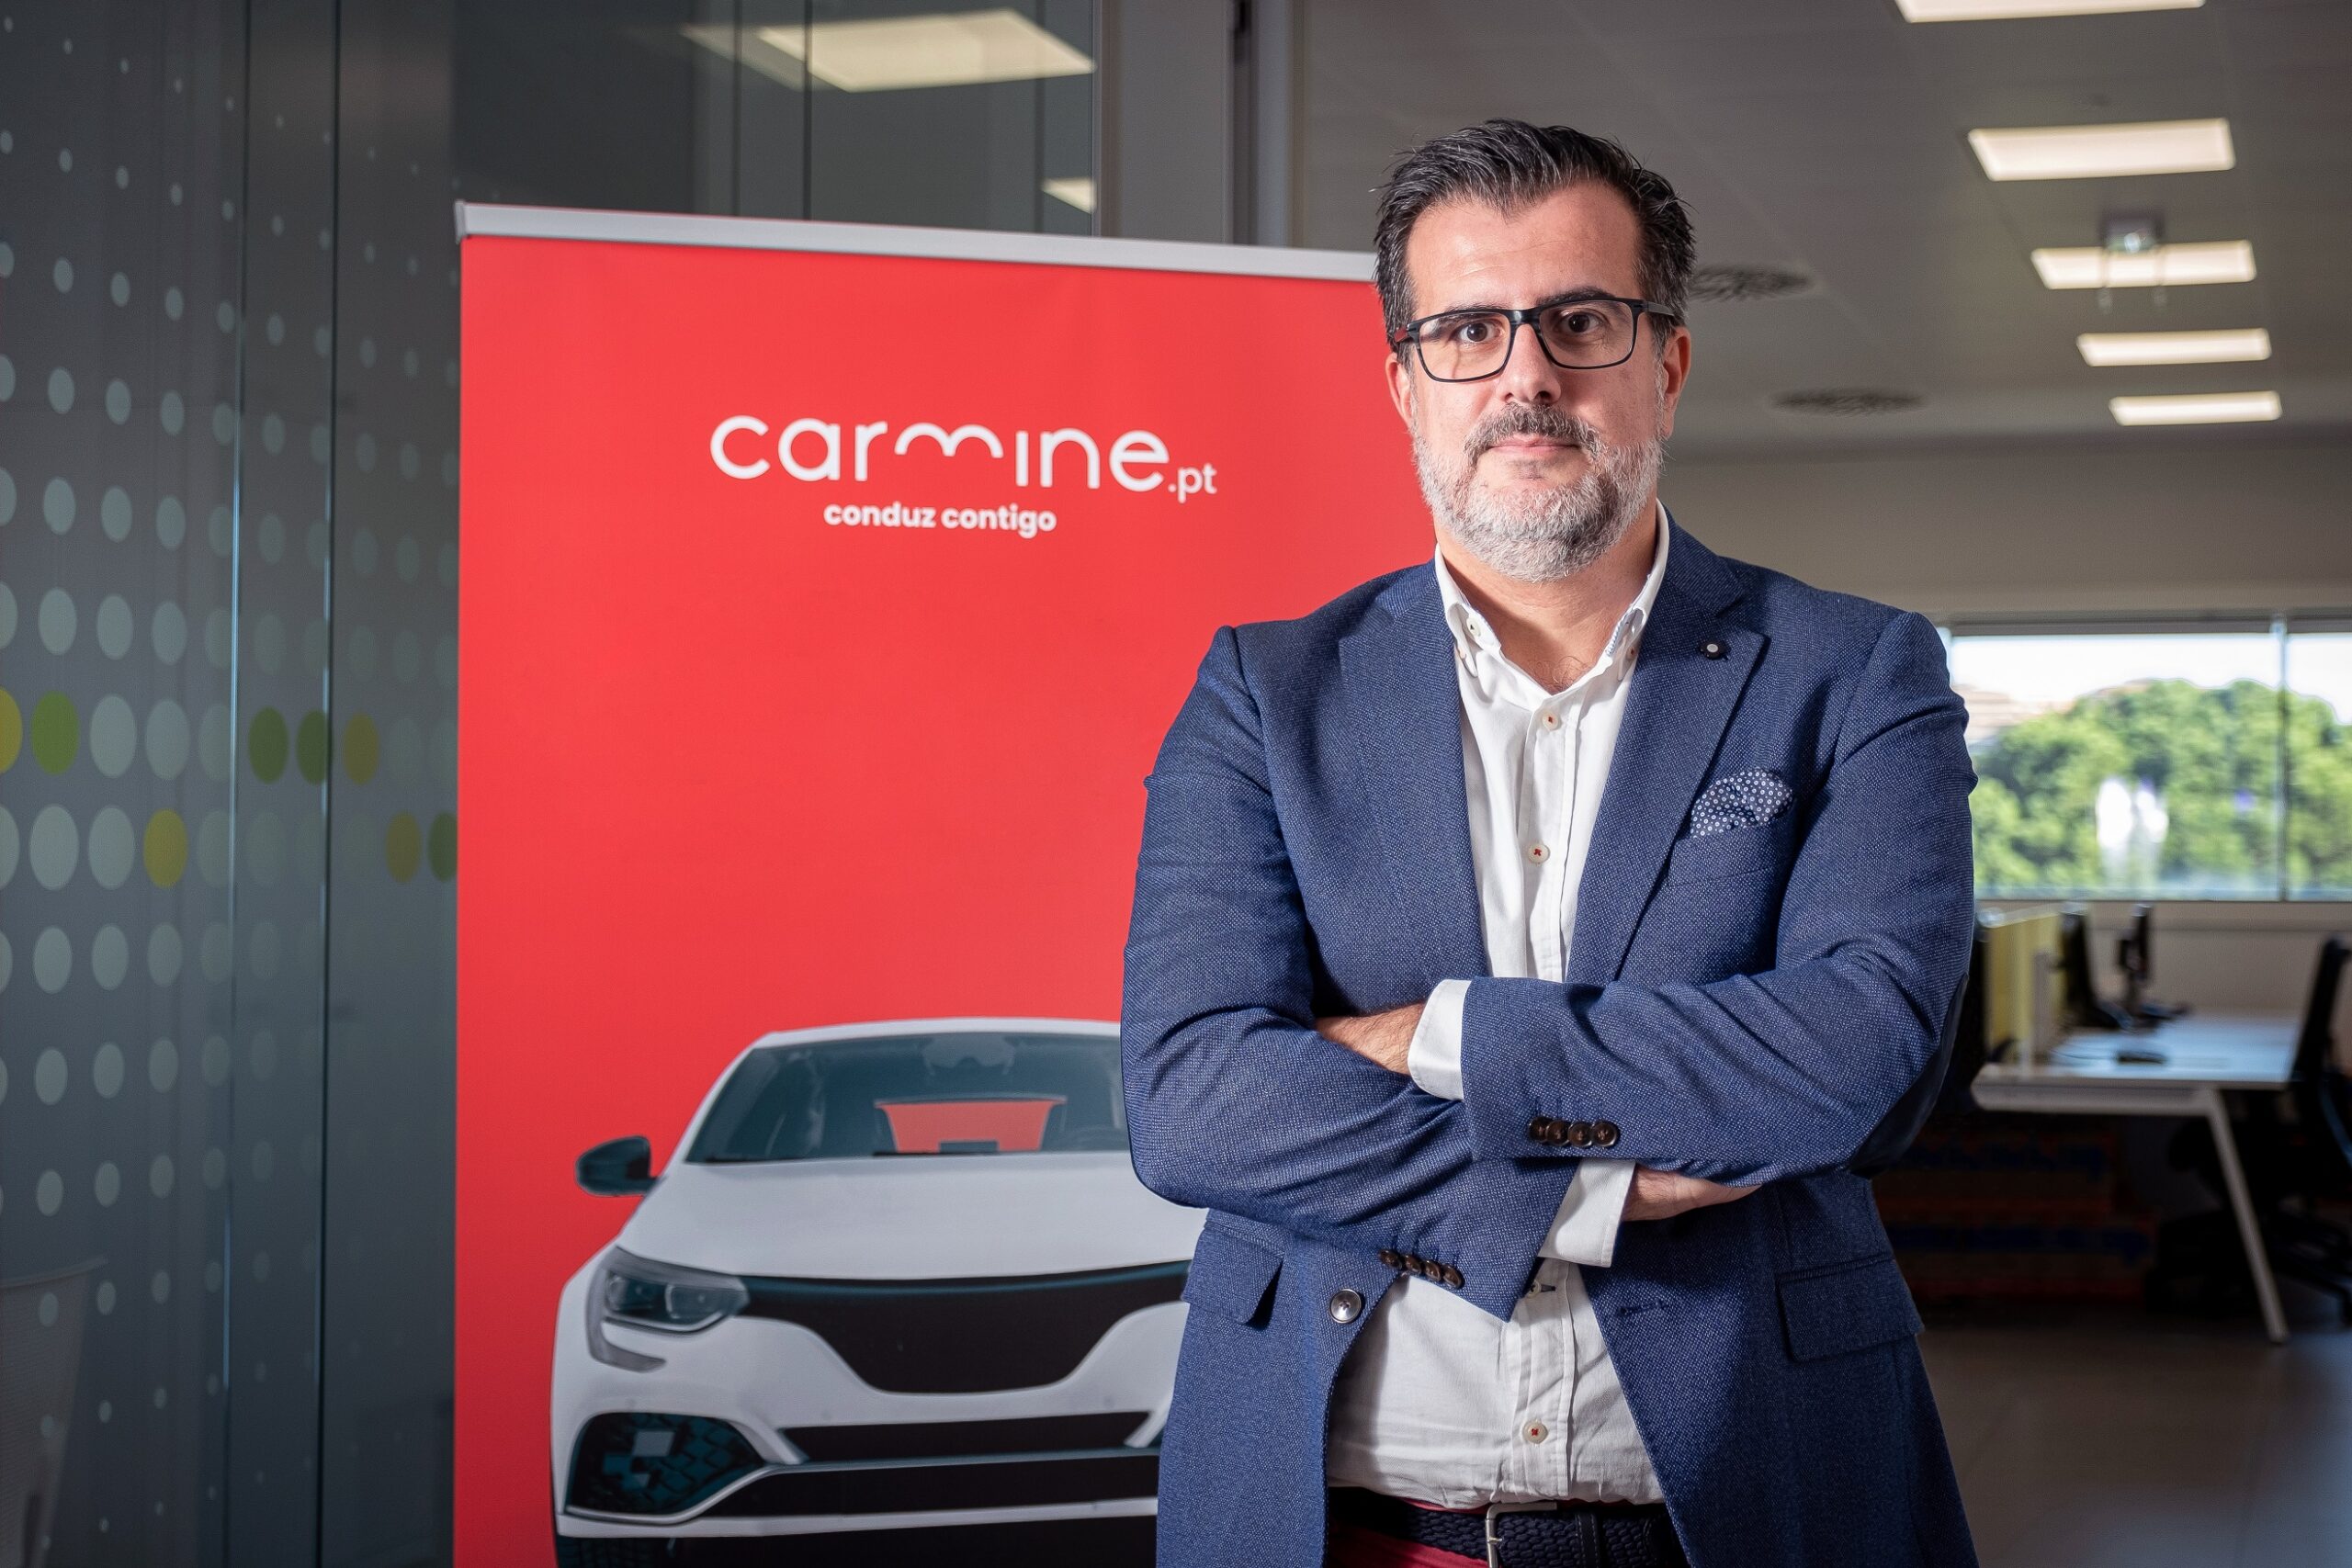 KuantoKusta assina parceria com Carmine.pt: 30 mil carros disponíveis à distância de um clique